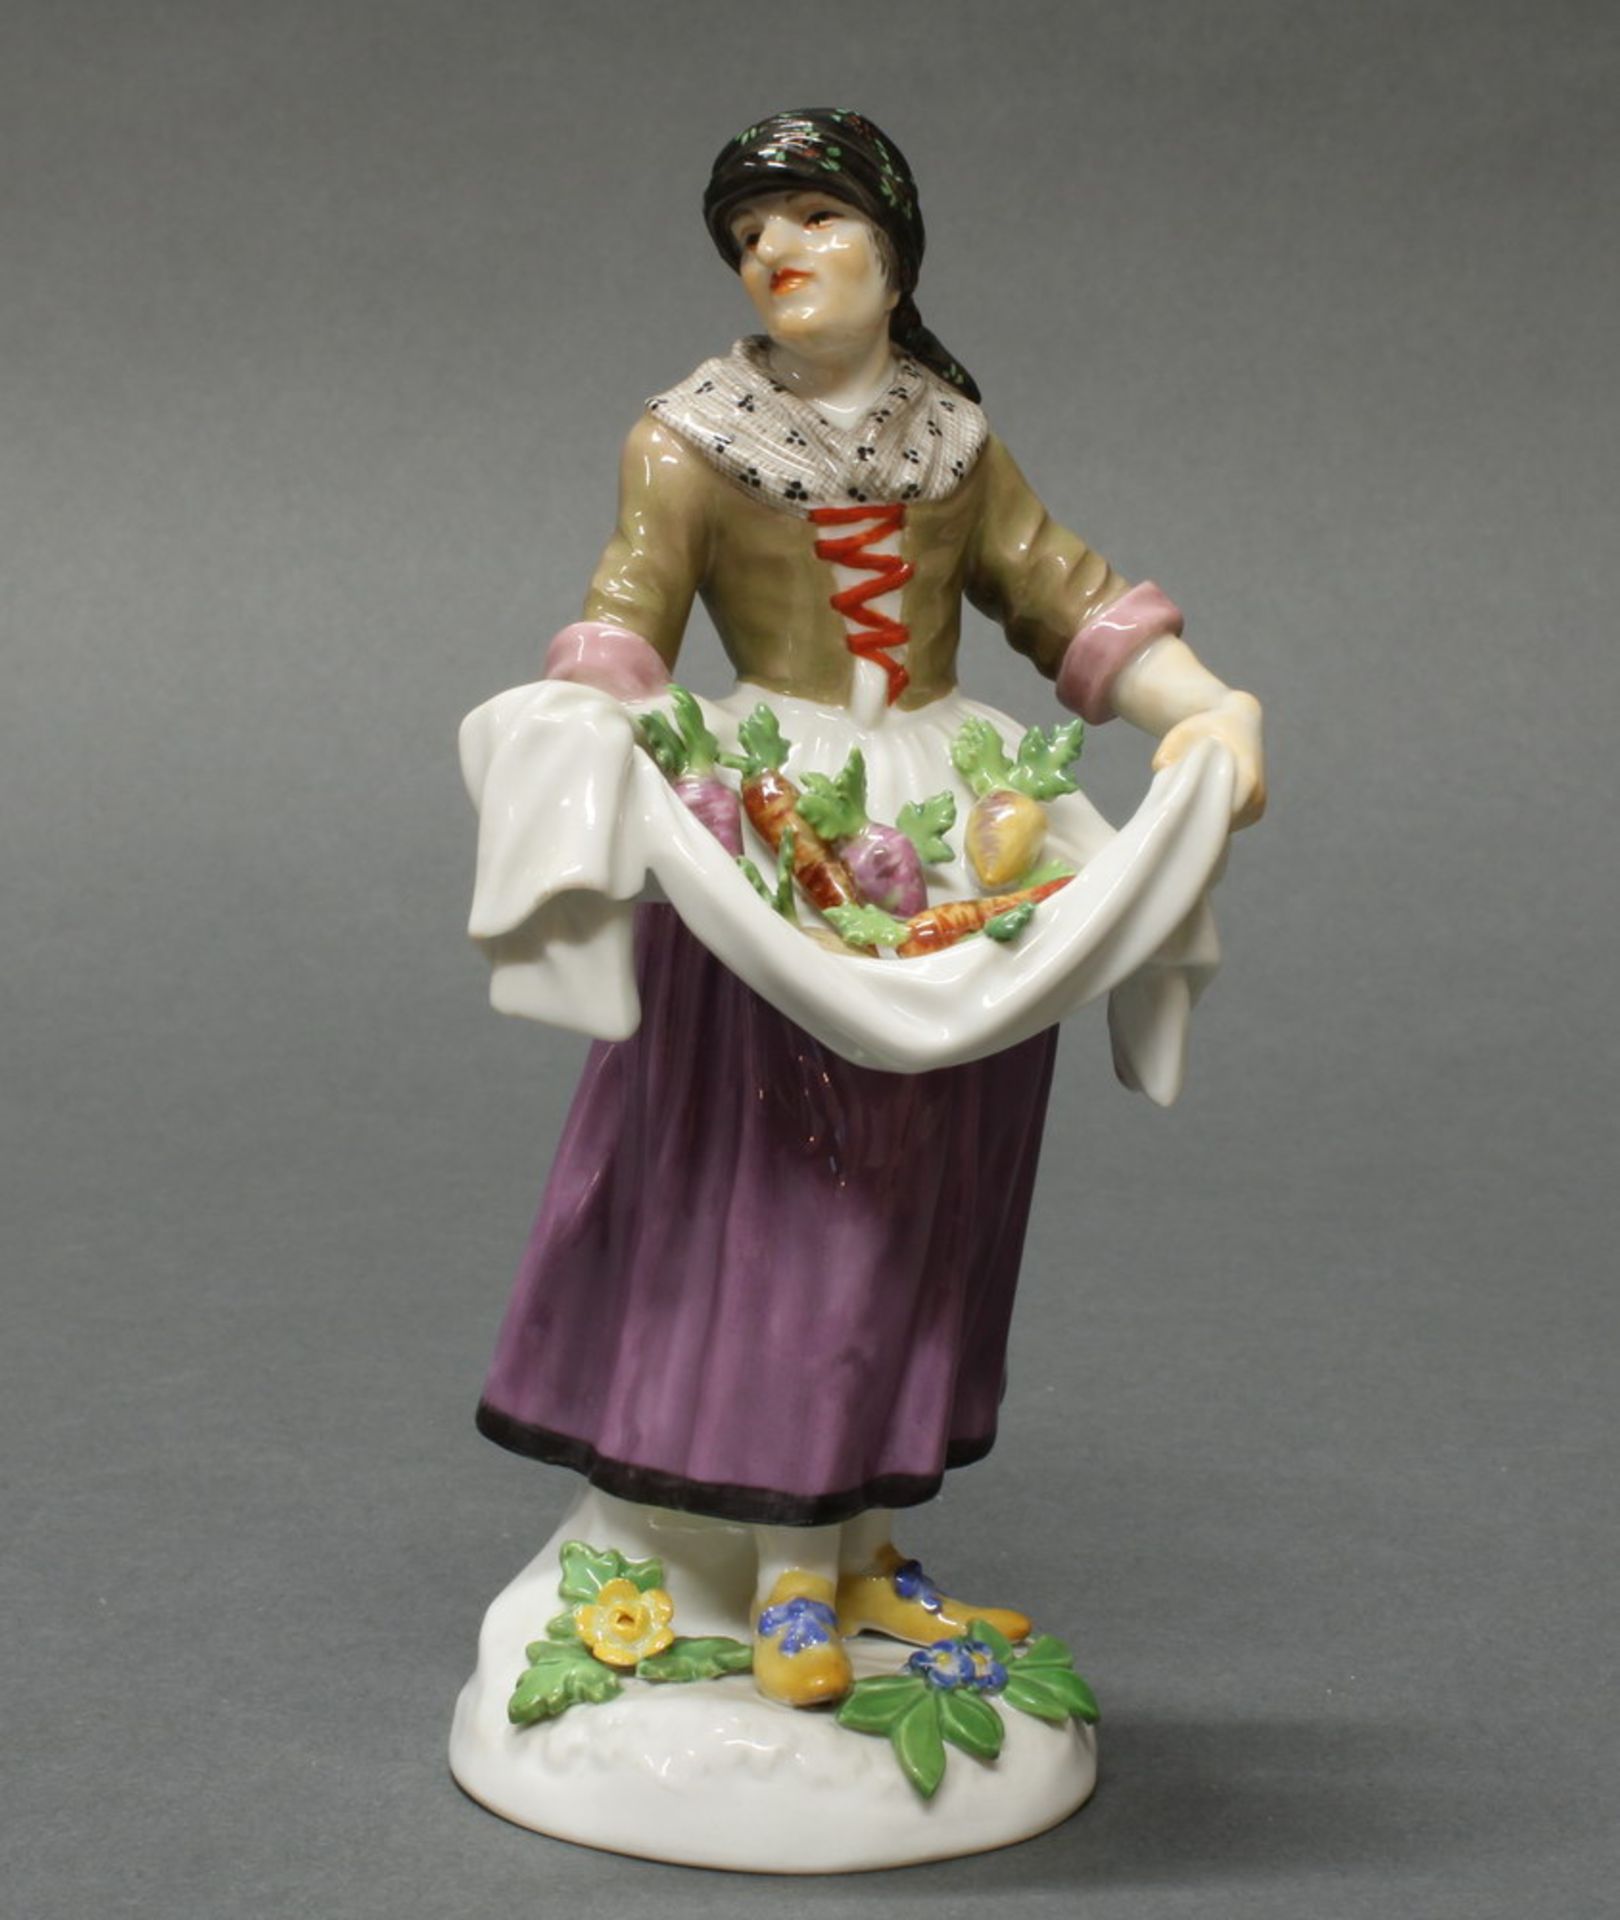 Porzellanfigur, "Bauersfrau mit Gemüse", Meissen, Schwertermarke, 1. Wahl, Modellnummer 1573,